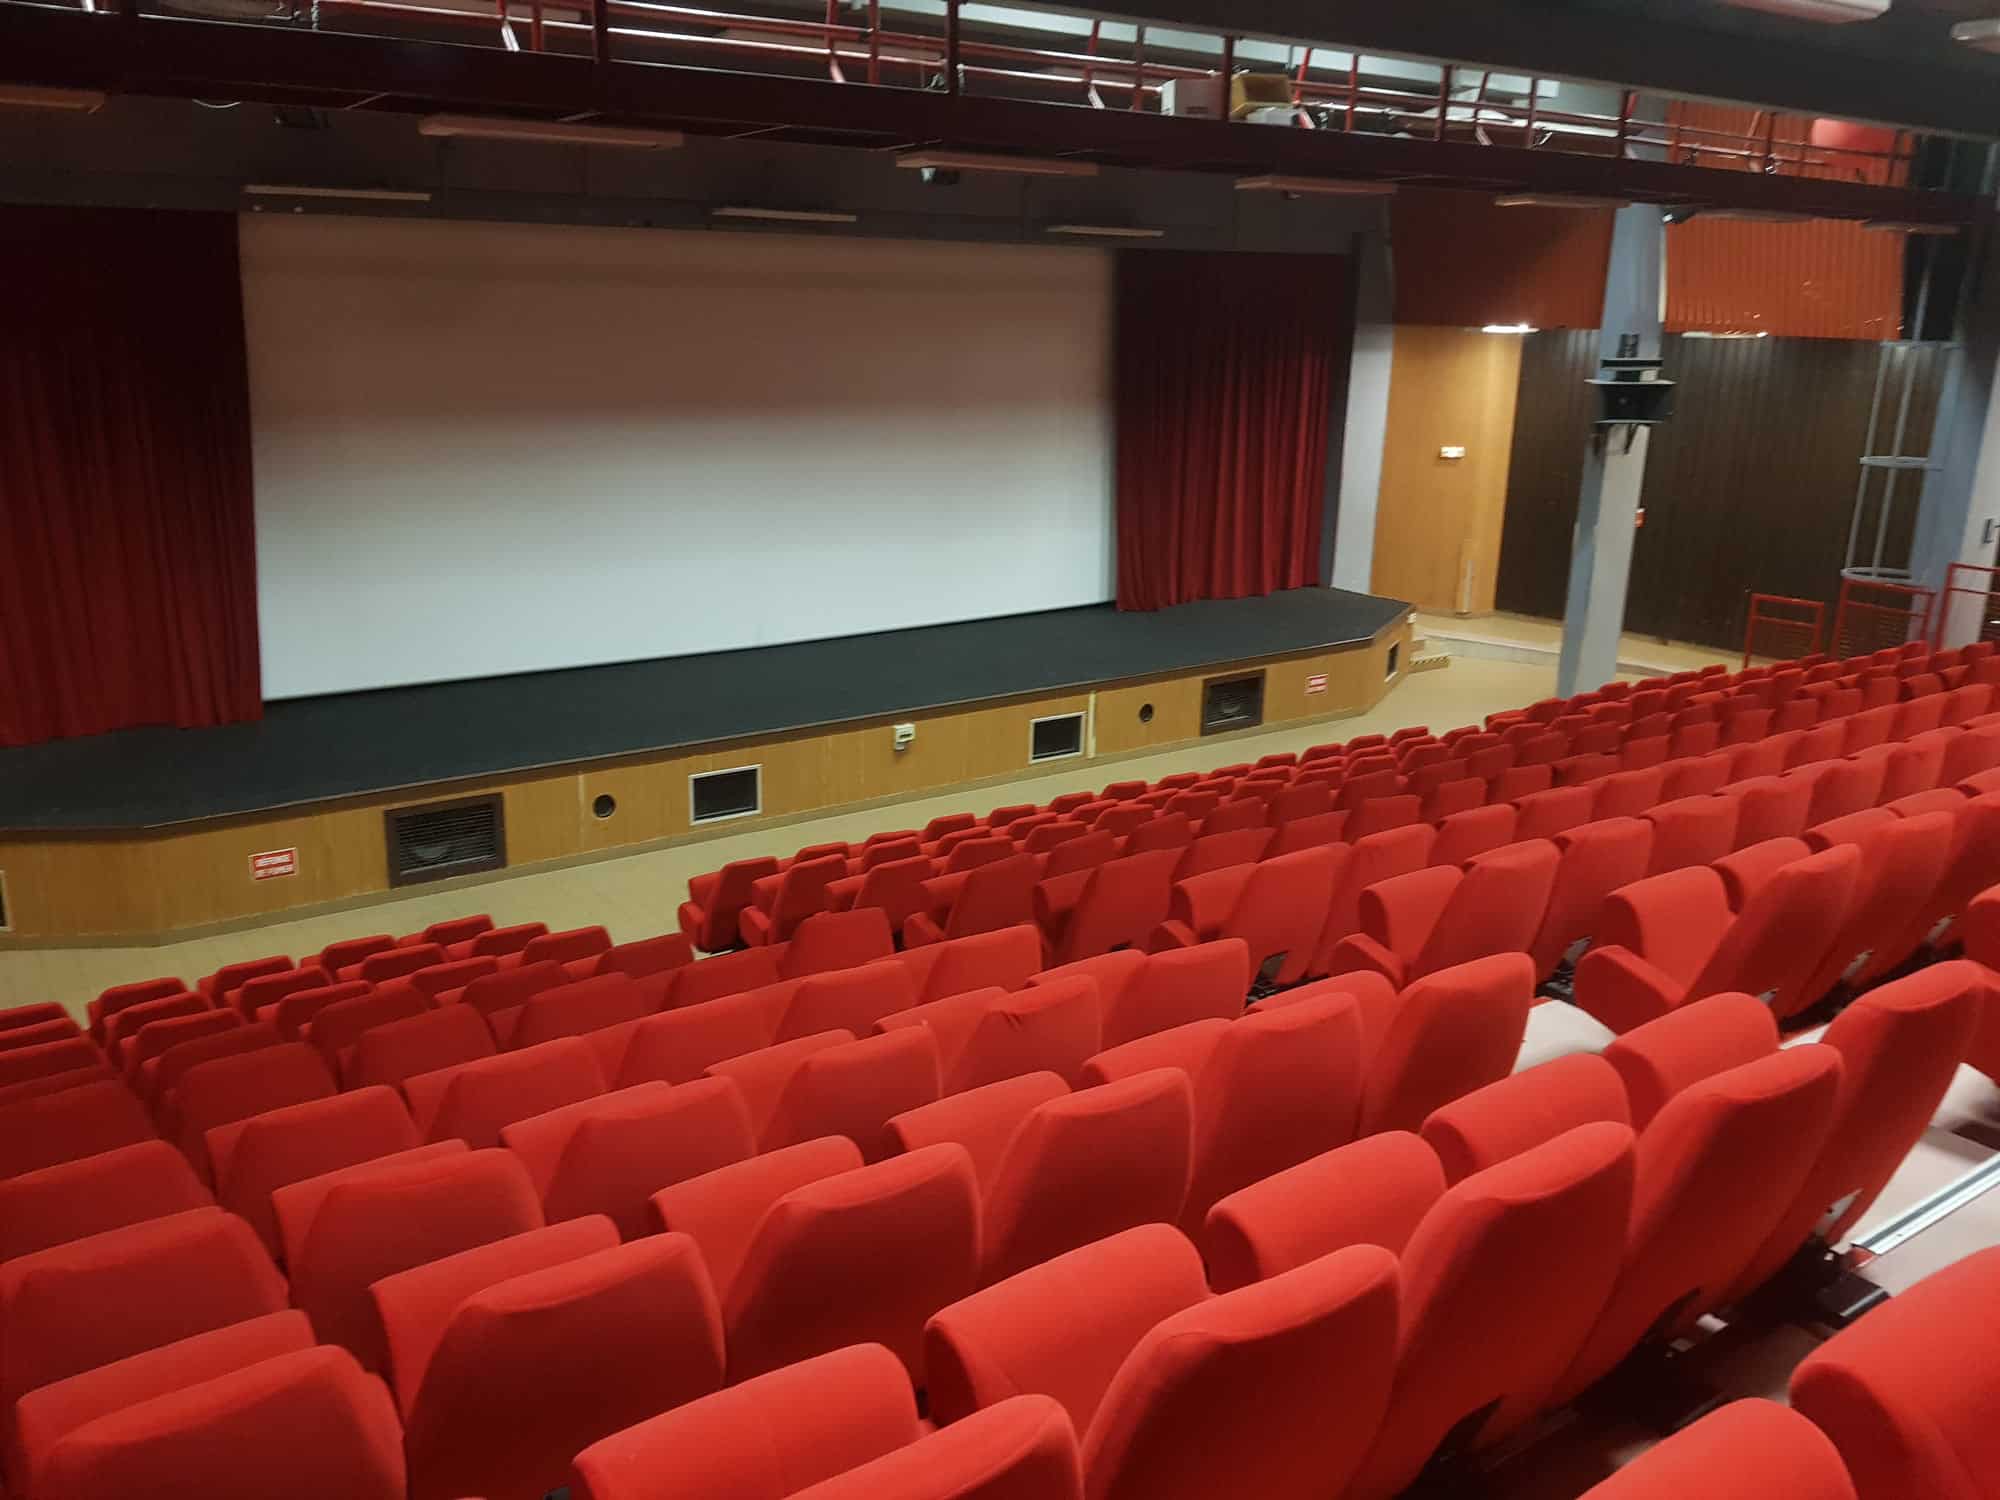 Cinéma Karellis en Maurienne